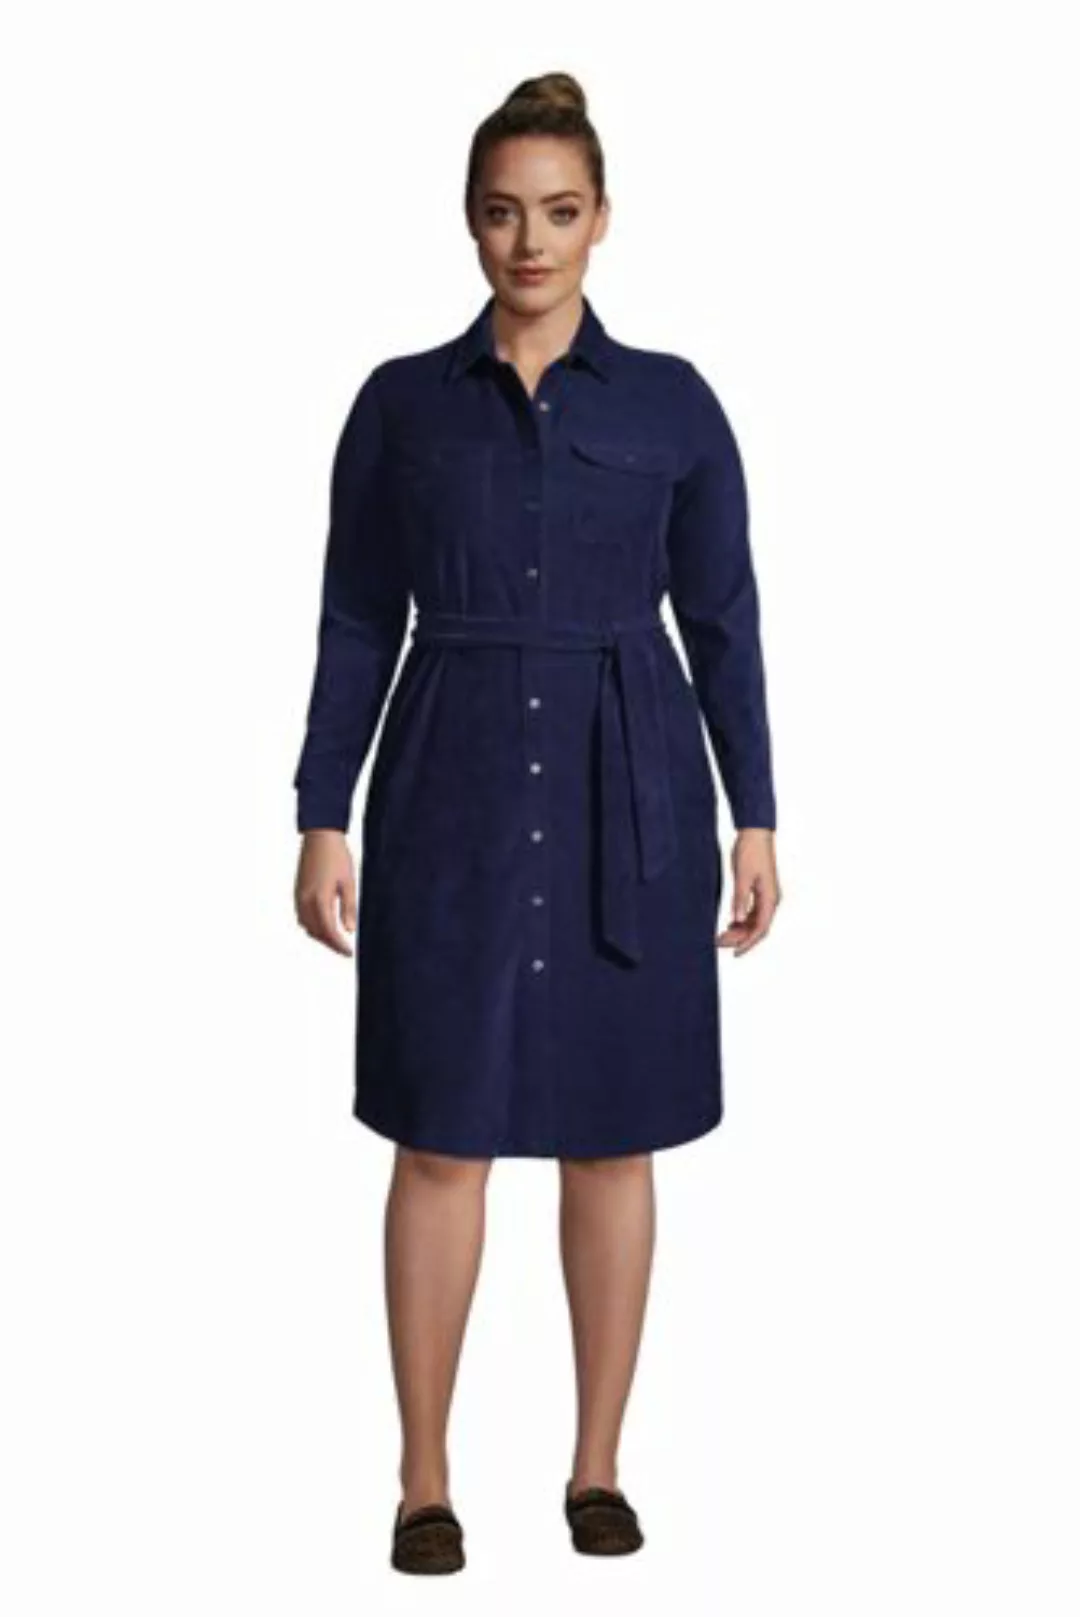 Blusenkleid aus Cord in großen Größen, Damen, Größe: 48-50 Plusgrößen, Blau günstig online kaufen